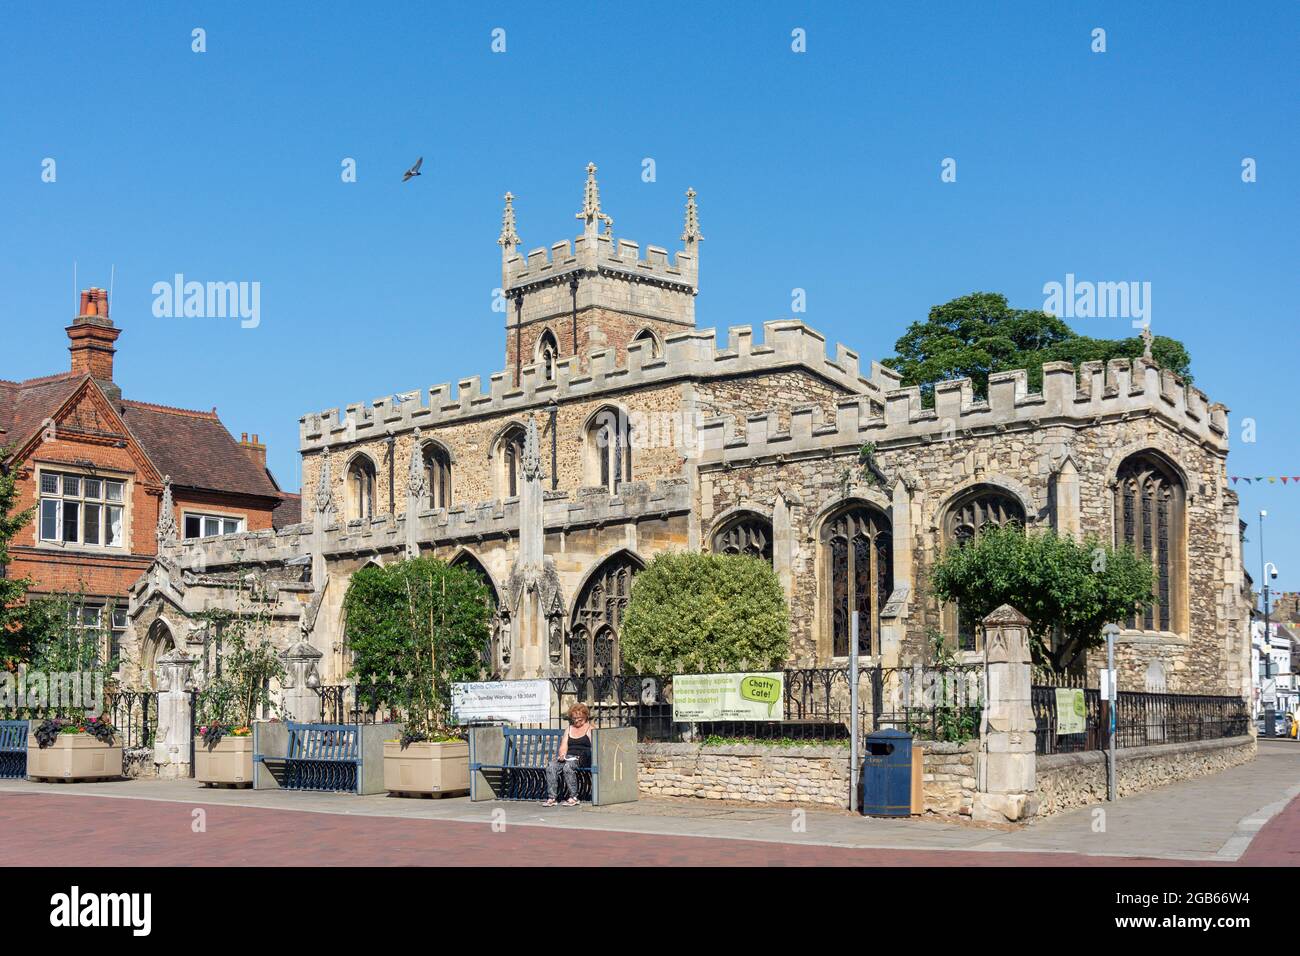 All Saints' Church, de la place du marché, Huntingdon, Cambridgeshire, Angleterre, Royaume-Uni Banque D'Images